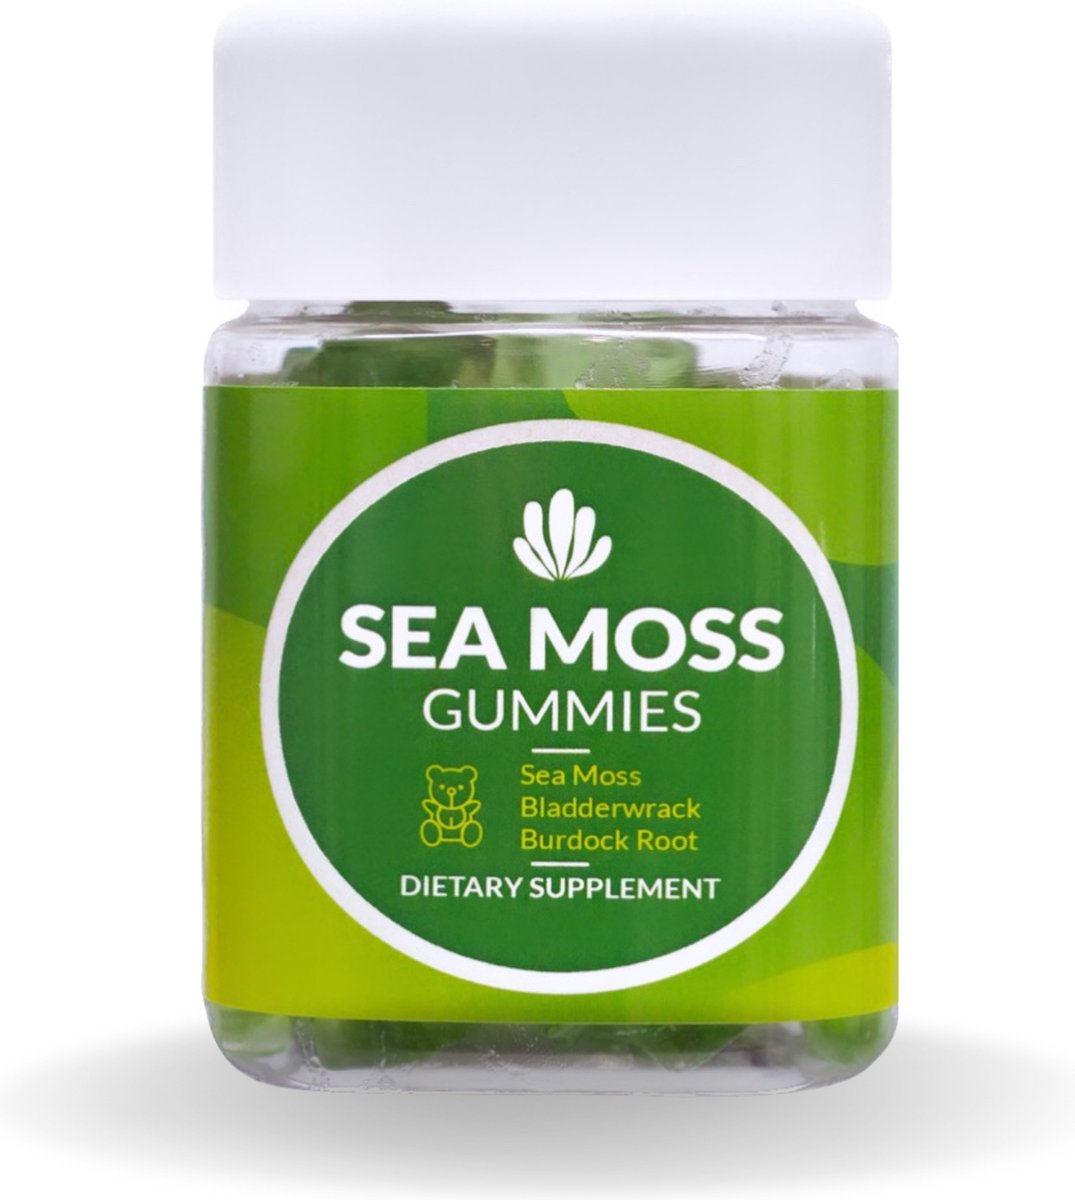 Sea moss gummies - Sea moss - Biologische zeewier gummies - Bevat Iers zeemos + kliswortel + blaaswier - 60 gummies voor een sterker immuunsysteem, gezondere huid en haar, detox - geweldig voor kinderen en volwassenen